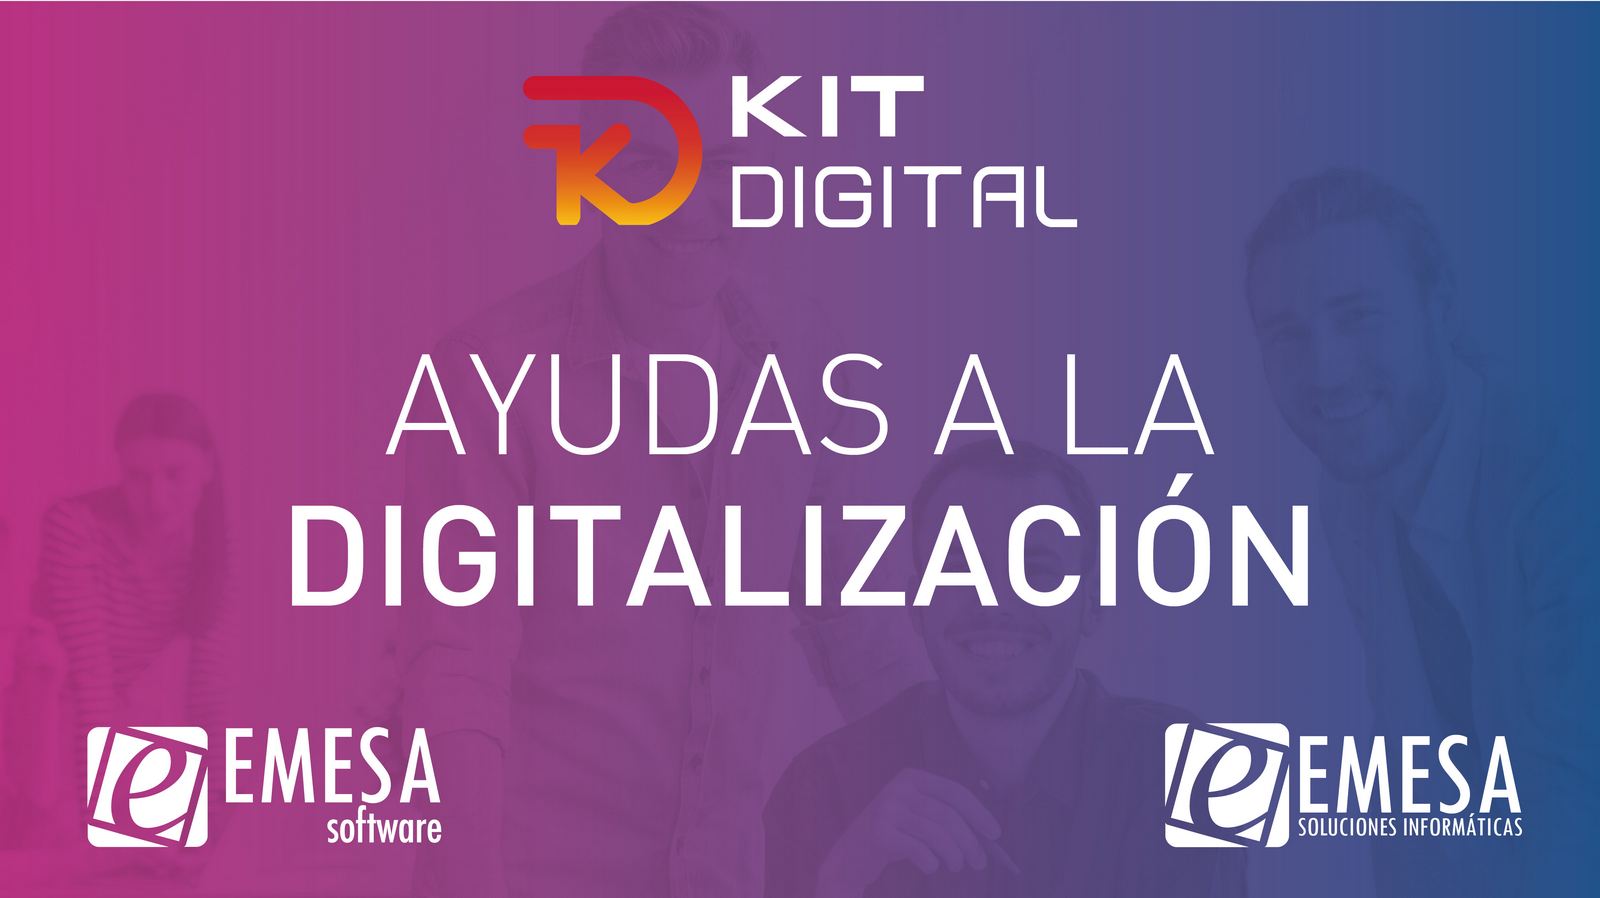 Kit Digital - Ayudas para empresas entre 3 y 9 empleados - 